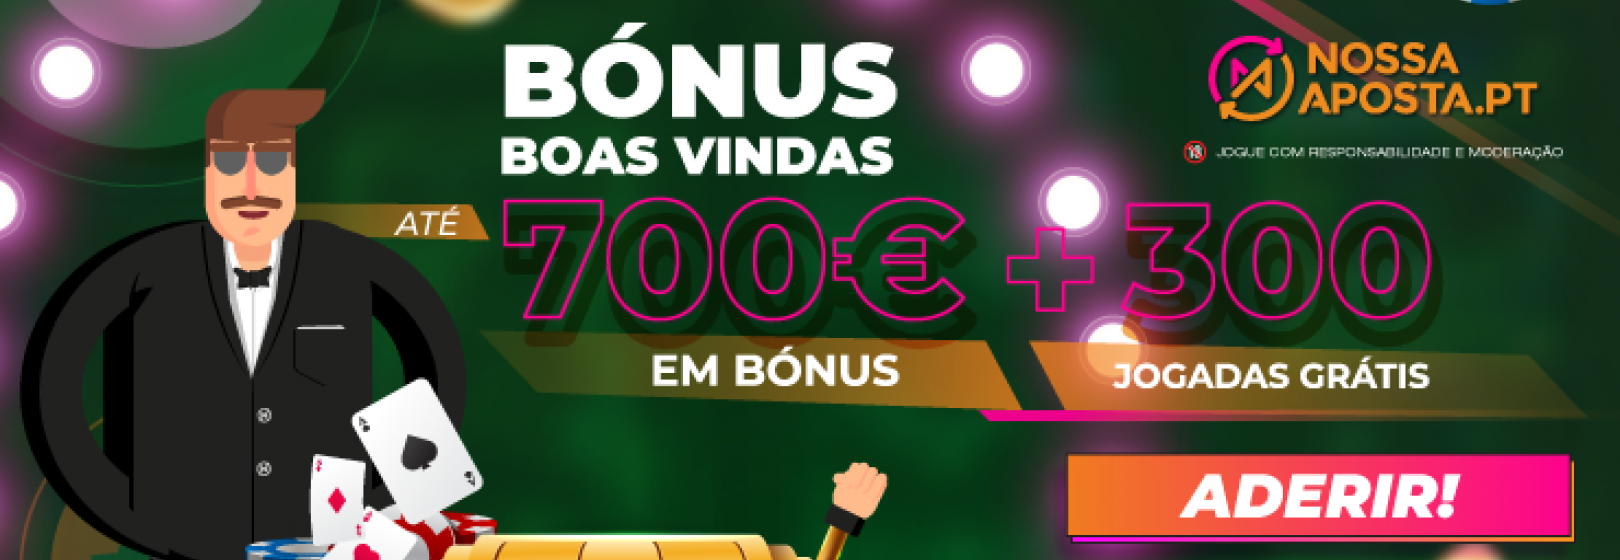 NossaAposta Casino Bónus | 3000 Jogadas Grátis + até 700€